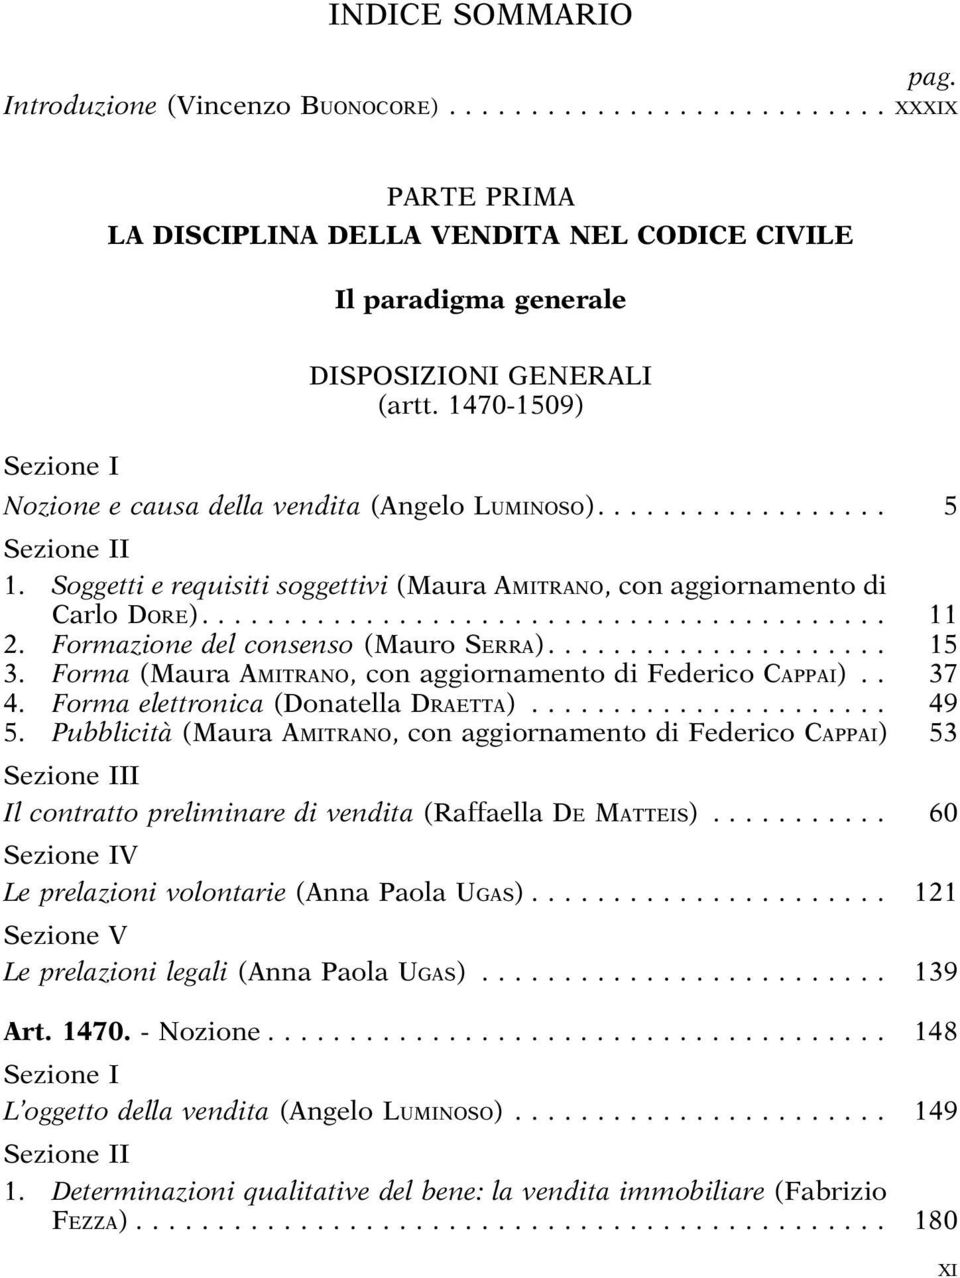 Formazione del consenso (Mauro SERRA)... 15 3. Forma (Maura AMITRANO, con aggiornamento di Federico CAPPAI).. 37 4. Forma elettronica (Donatella DRAETTA)... 49 5.